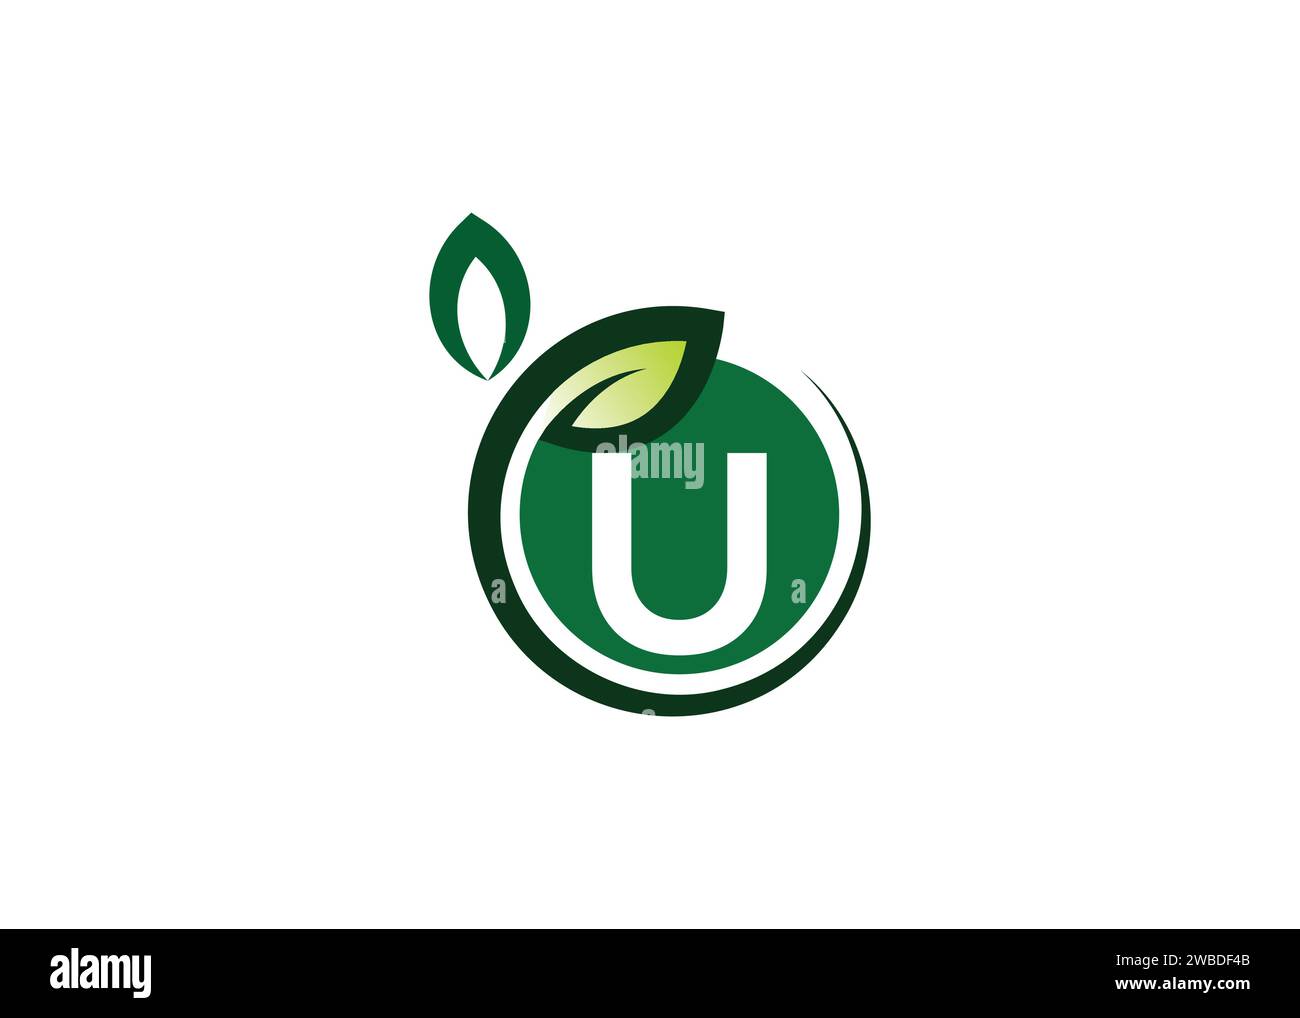 Letter U Green Leaf Logo Design Vektorvorlage. Letter U Nature Growth Leaf Vector Logo Stock Vektor